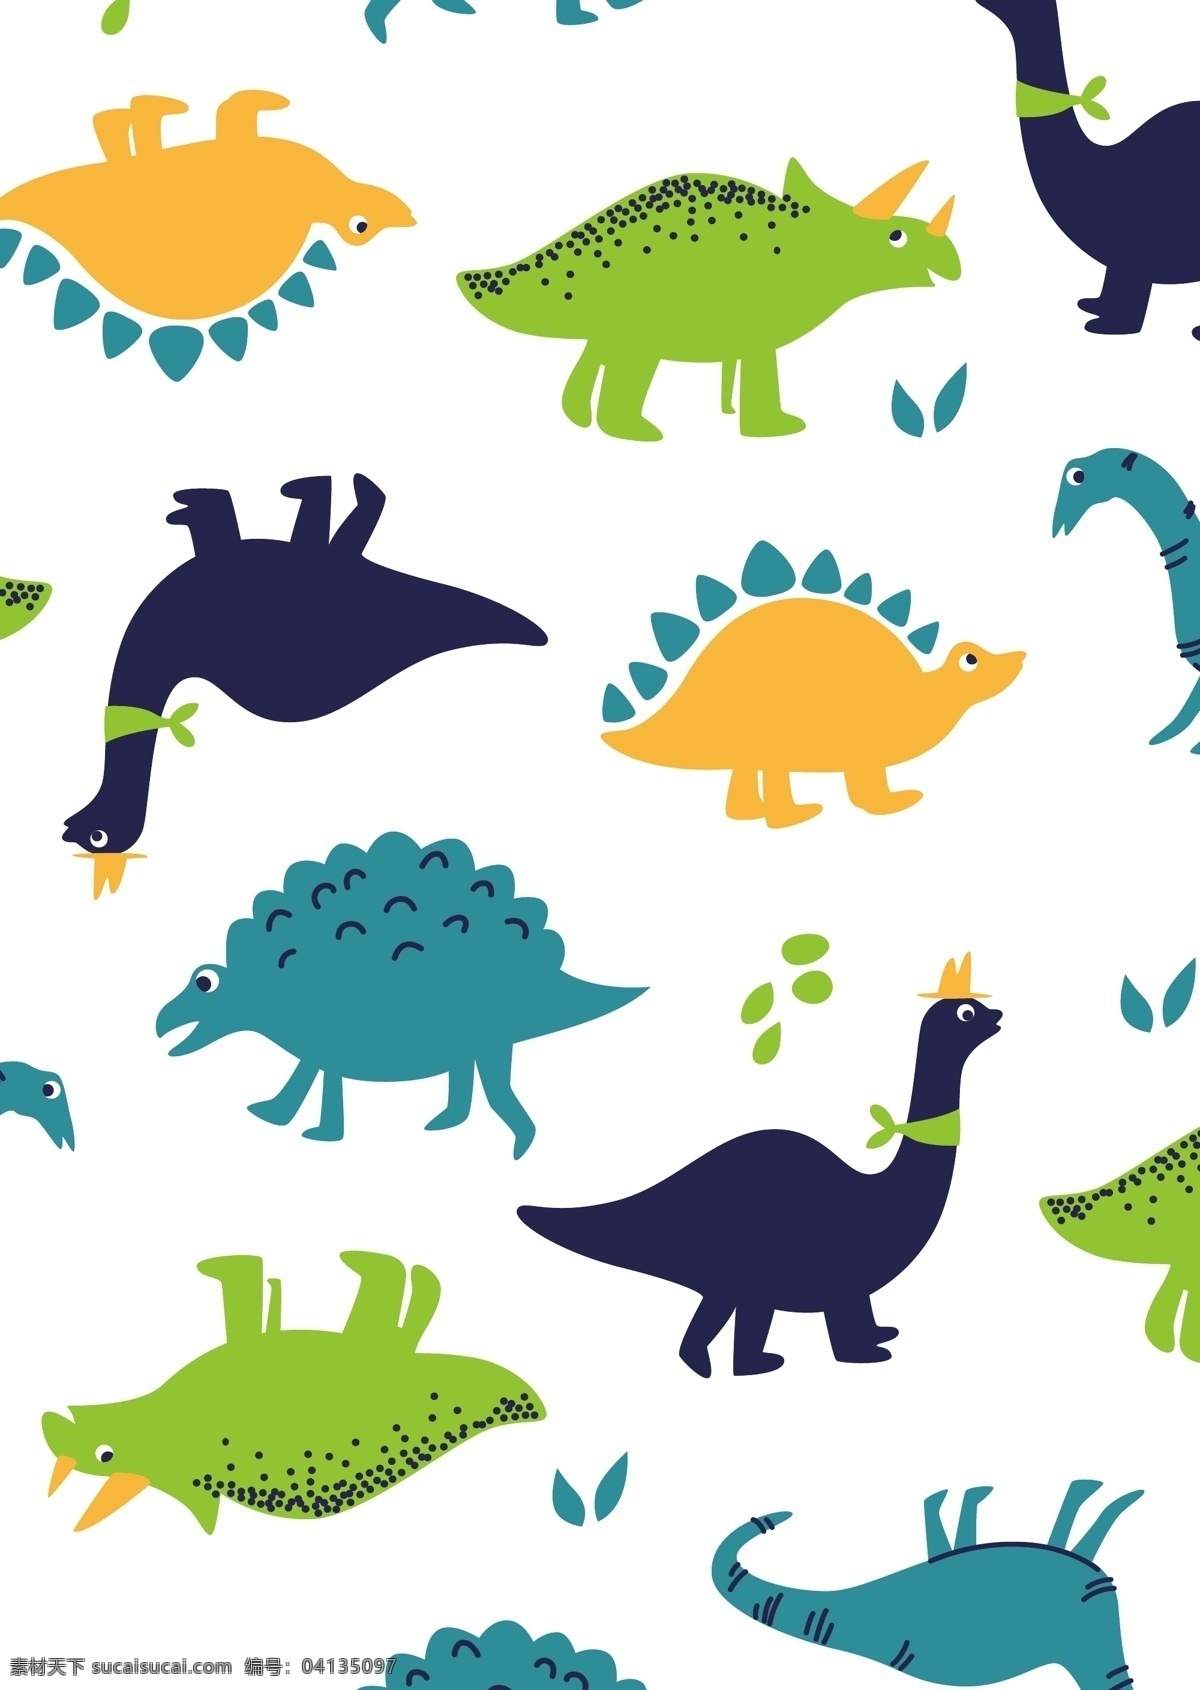 矢量 卡通 恐龙 底纹 背景 元素 矢量恐龙 卡通恐龙 恐龙底纹 恐龙印花 恐龙满印